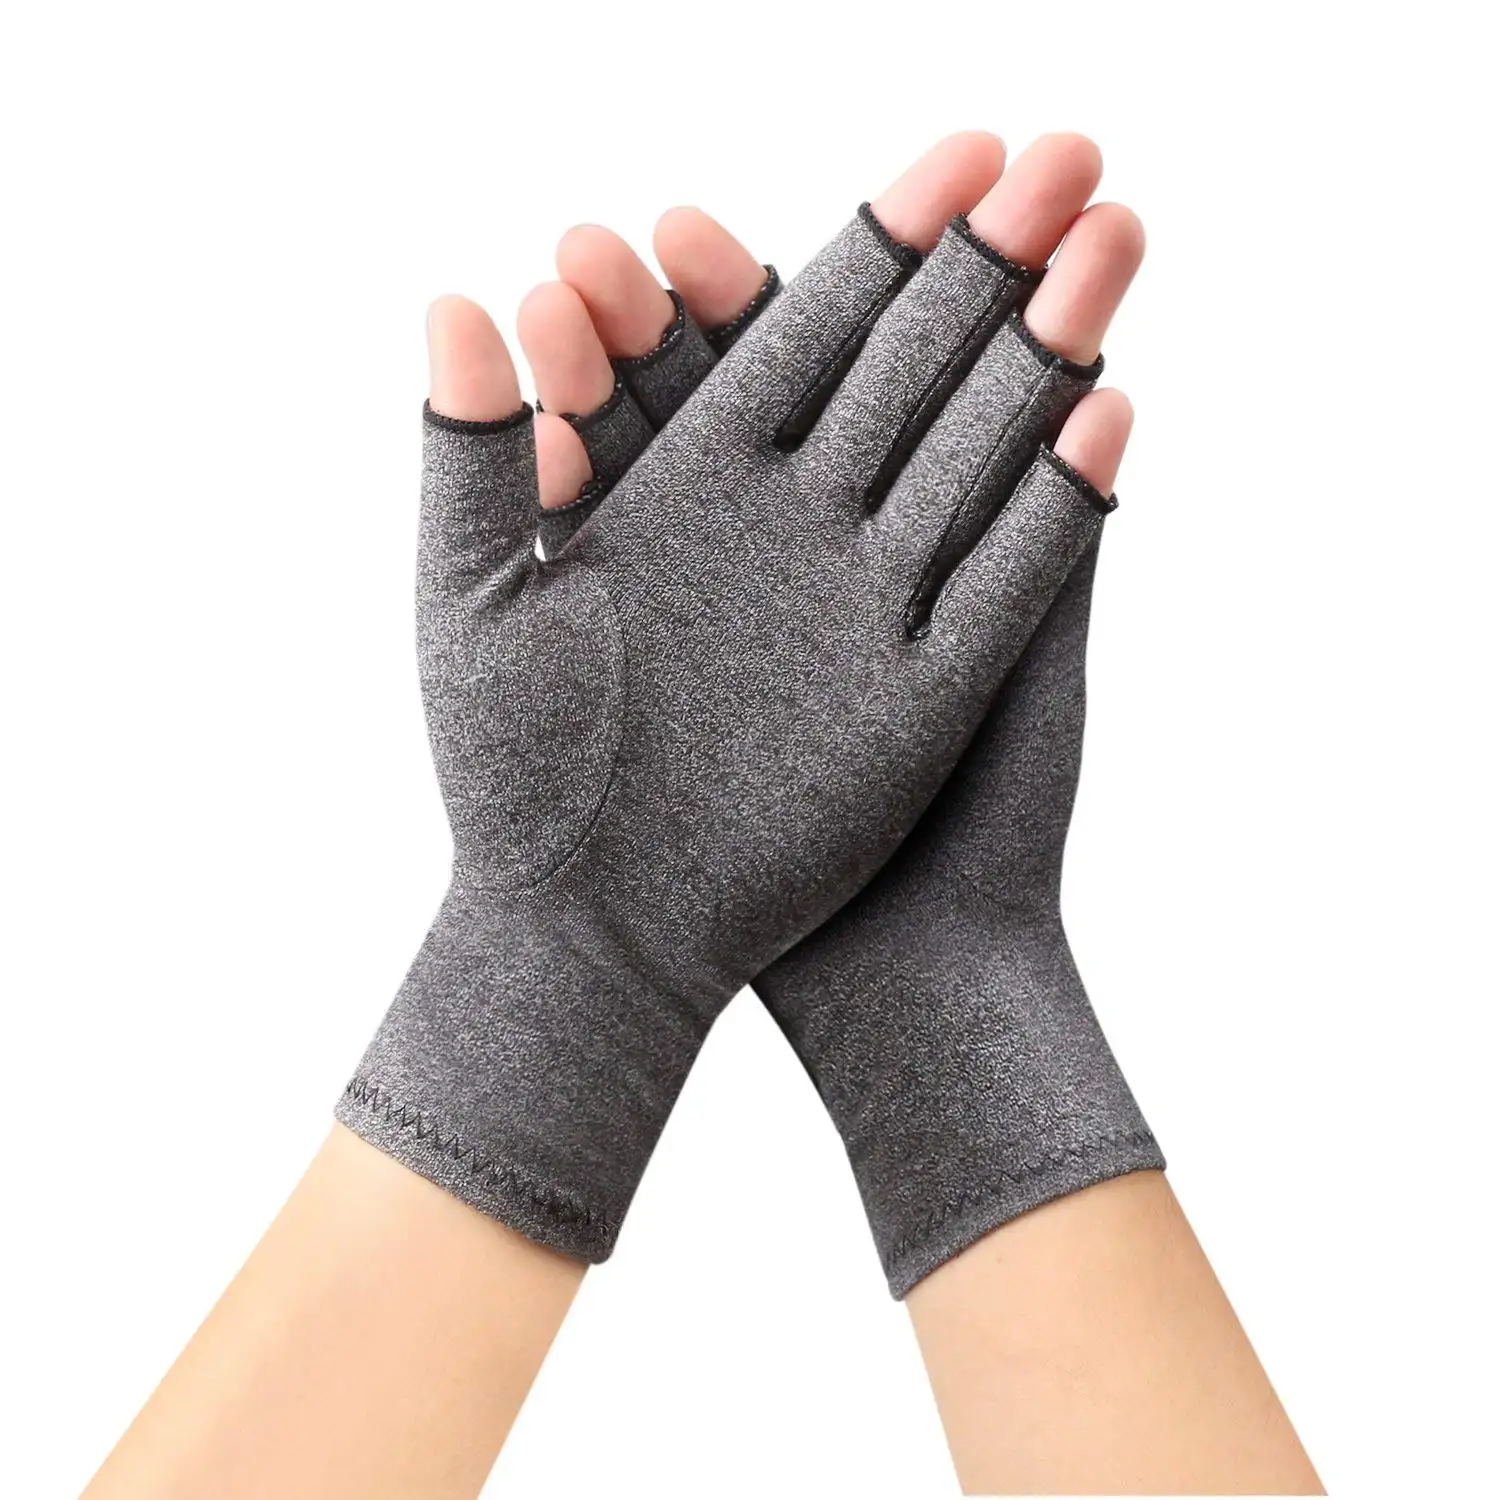 Spandex pression magnétique arthritiques gants de compression gants sans doigts pour le travail quotidien femmes hommes